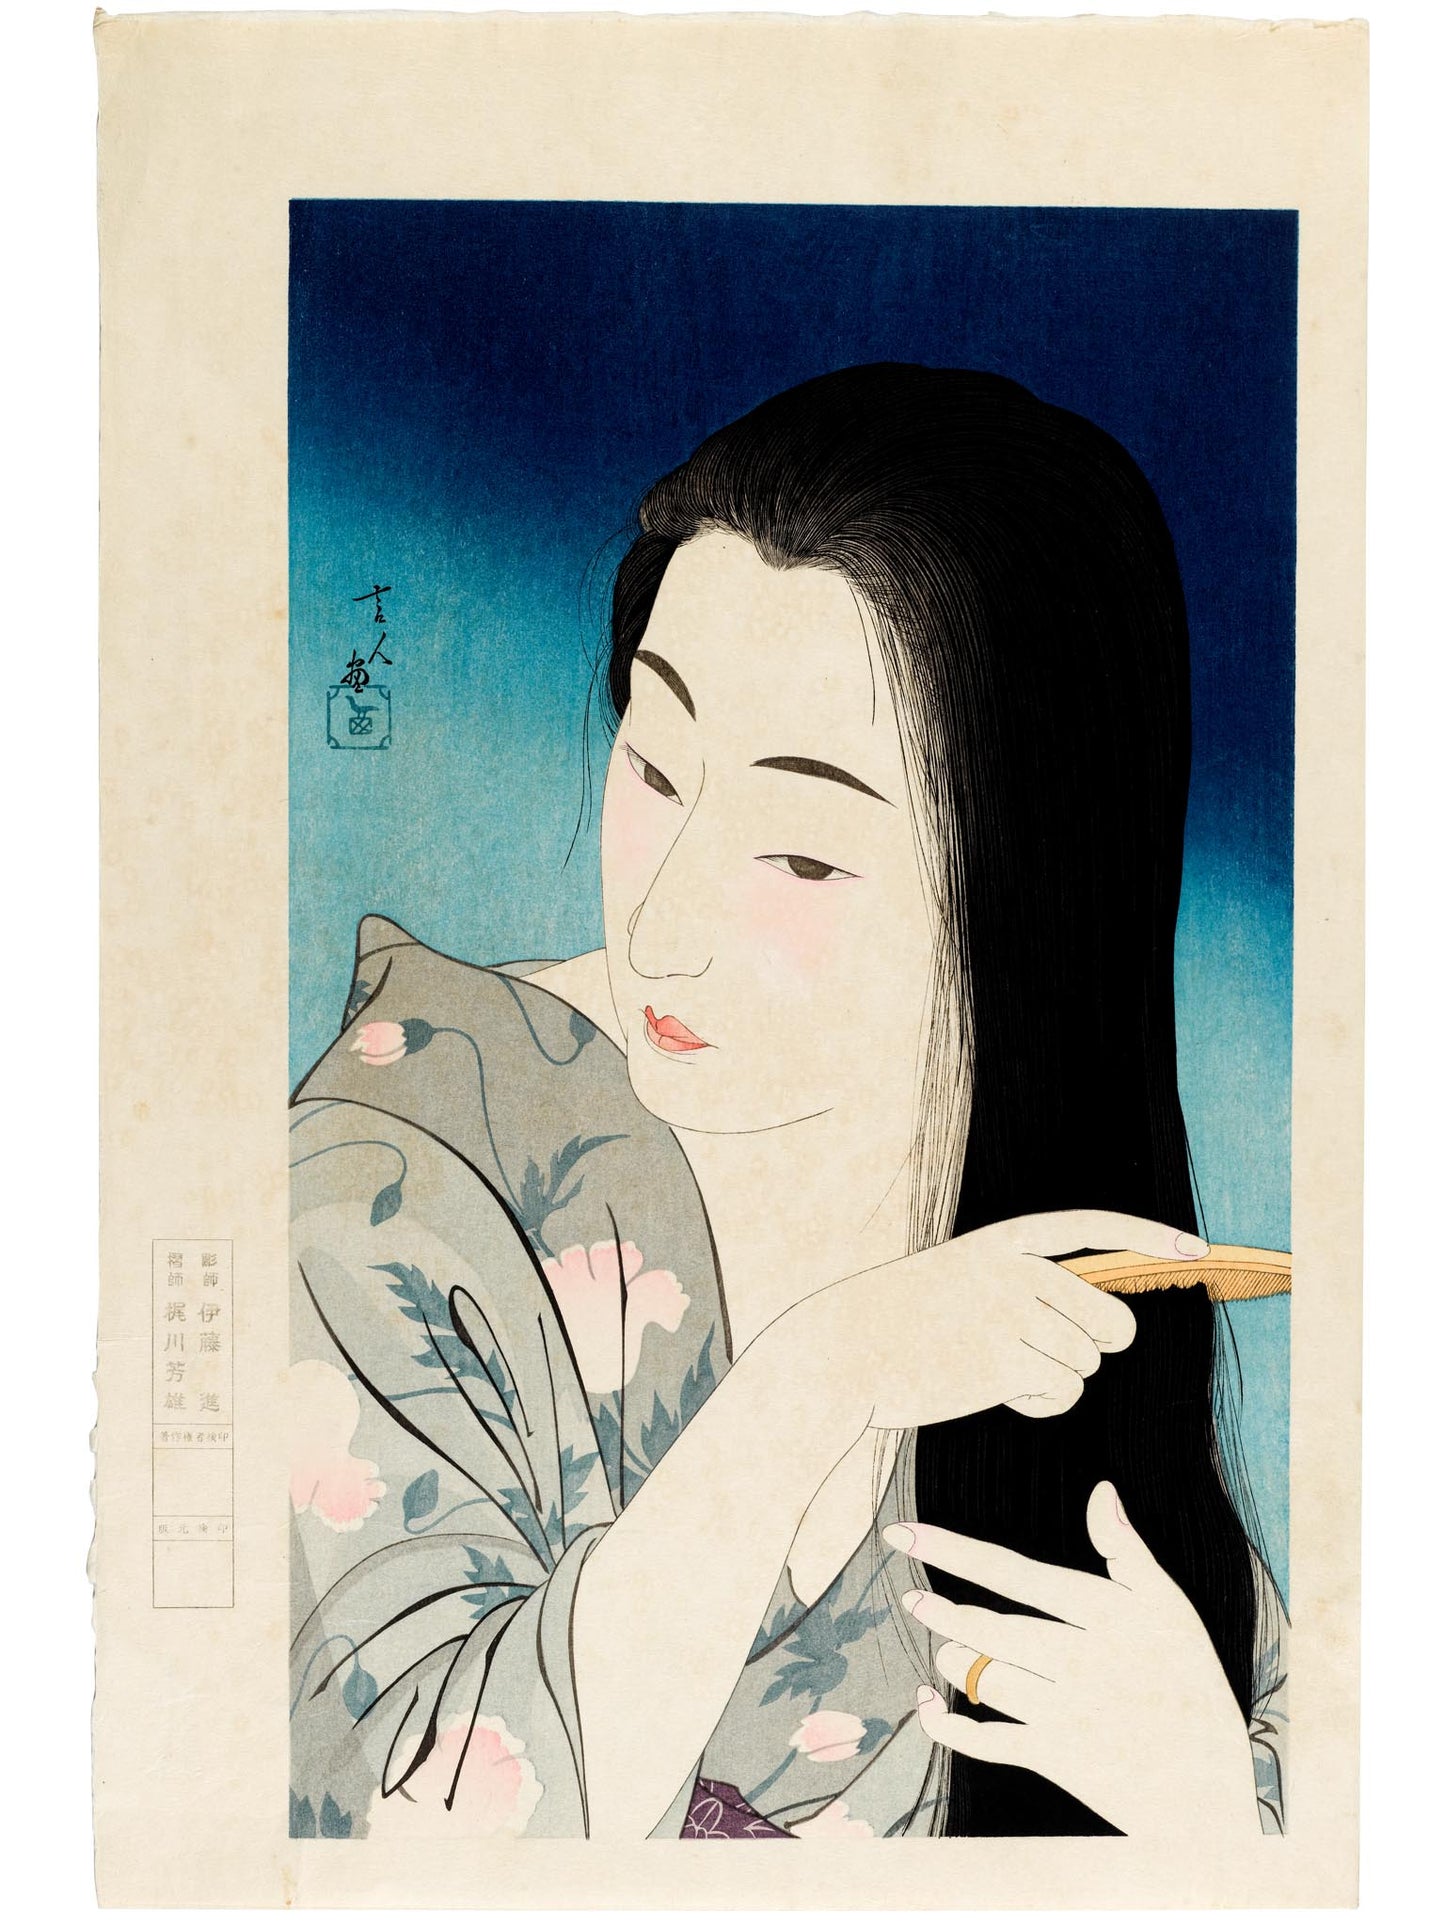 estampe japonaise de Torii Kotondo, série 12 aspects des femmes, numéro 1 Woman combing hair, femme se brossant les cheveux